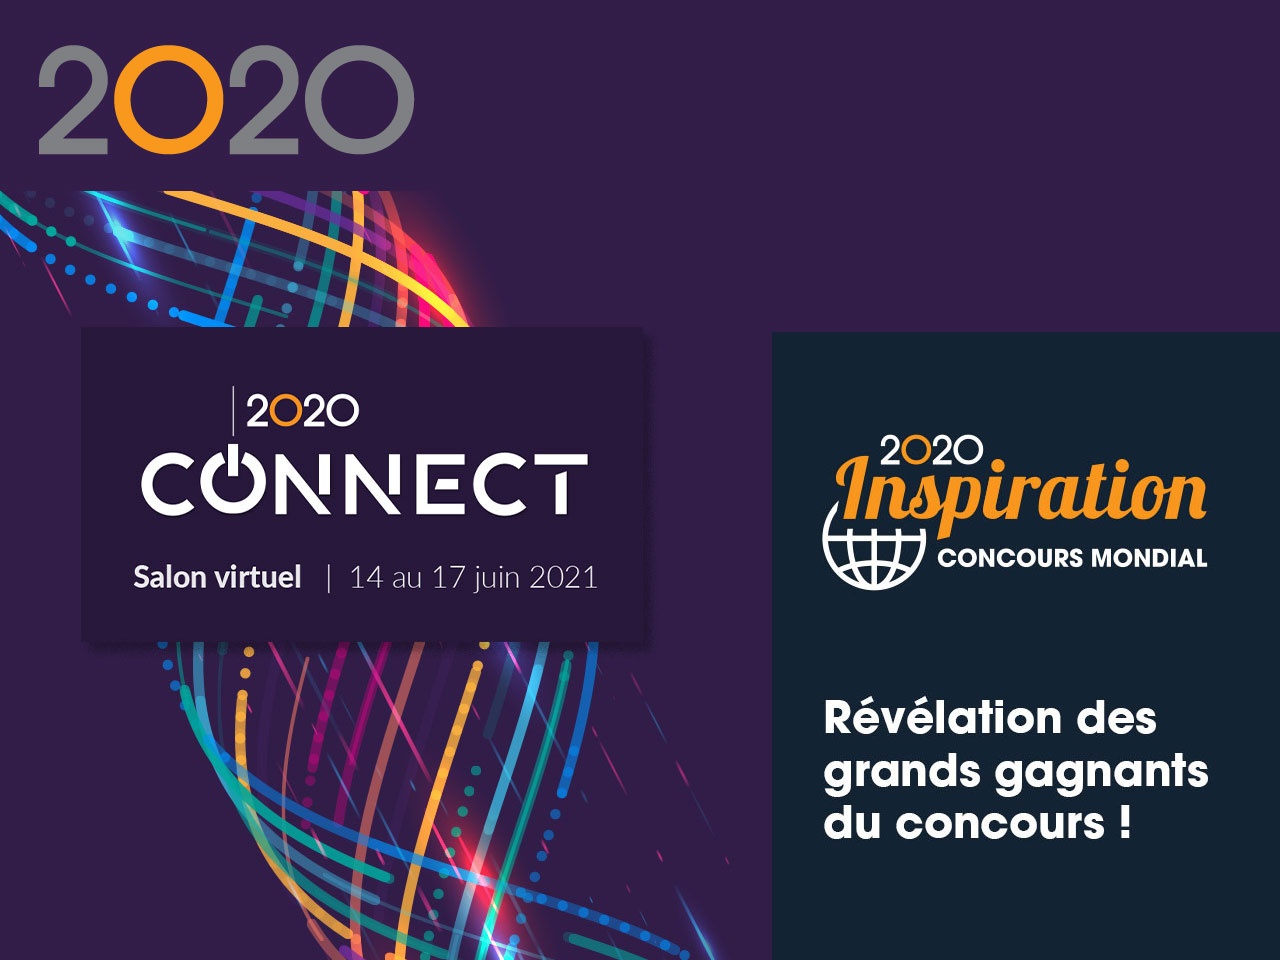 2020 s’exprime mondialement autour du 2020 Connect virtuel et son Concours Mondial Inspiration !